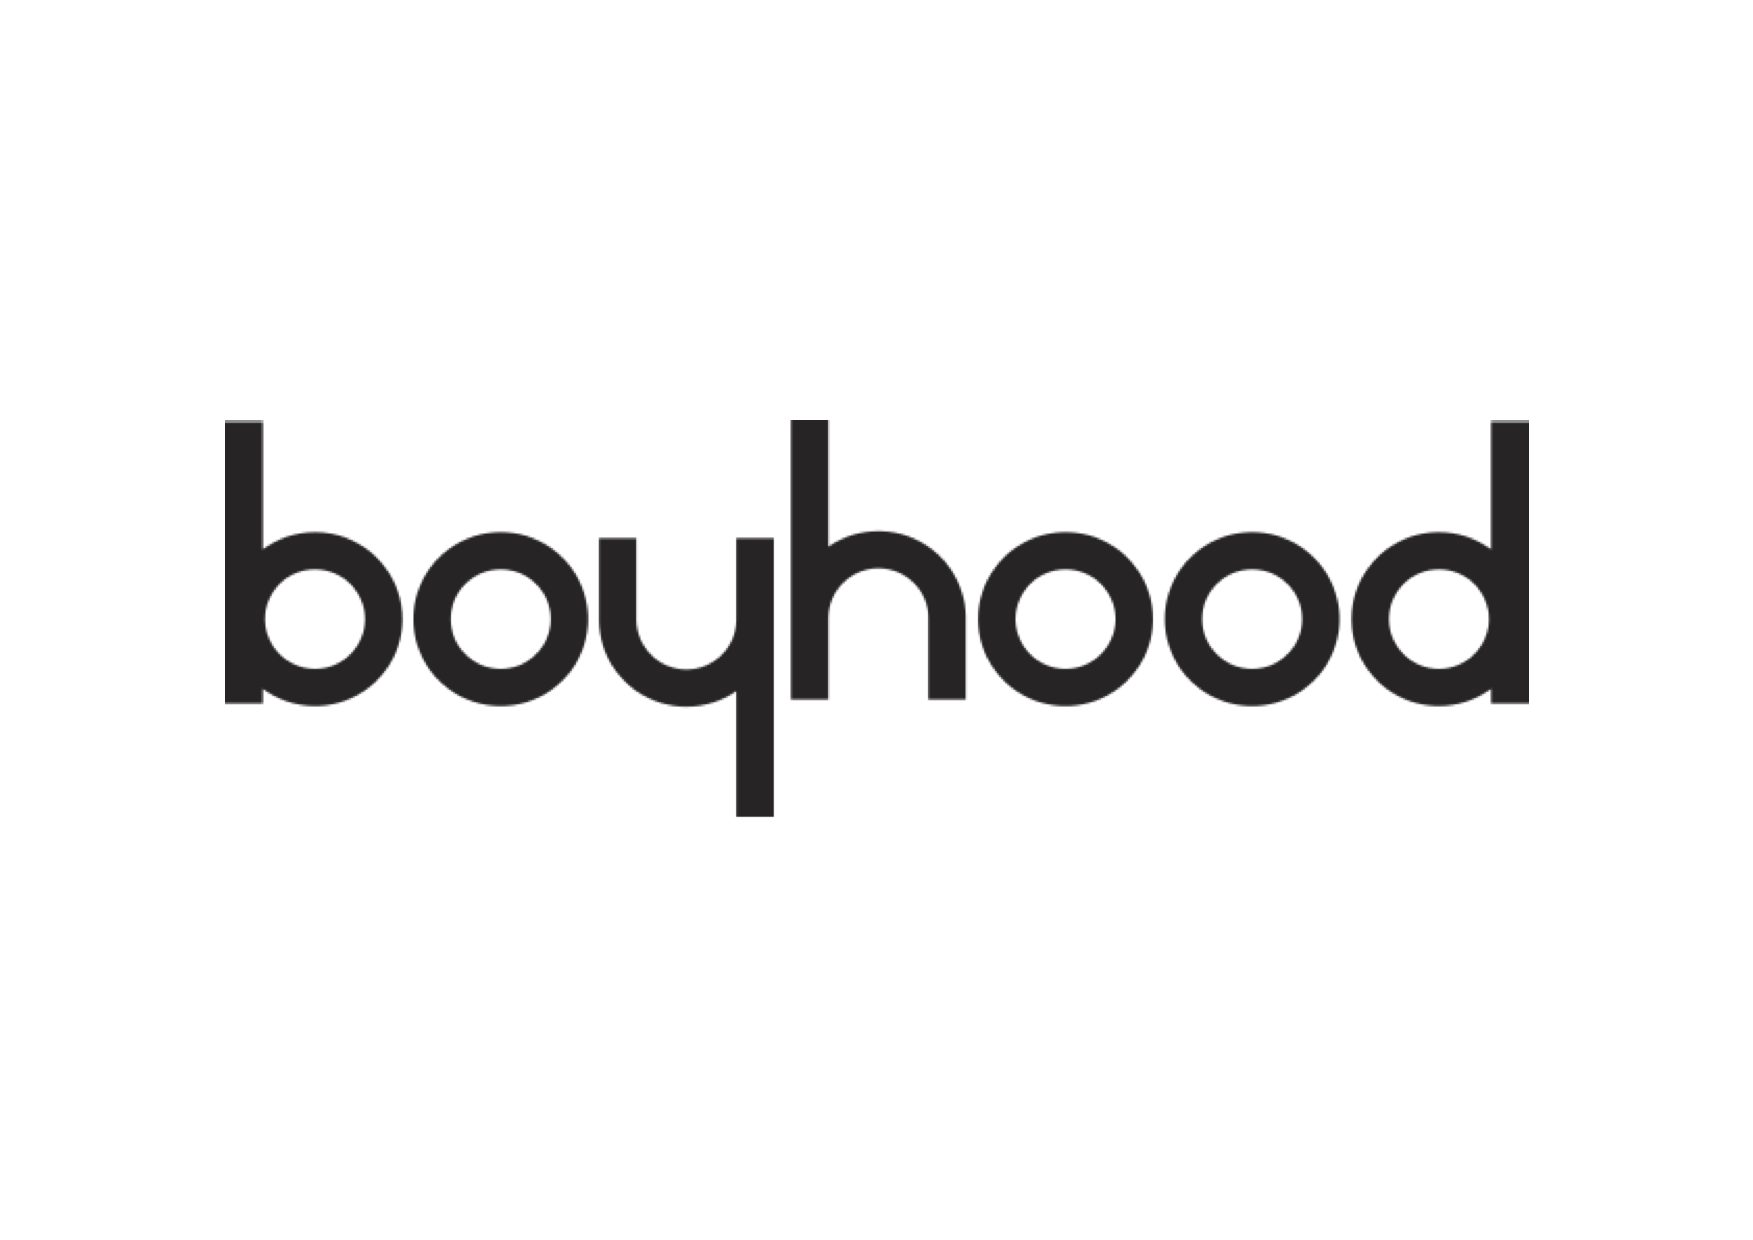 BOYHOOD